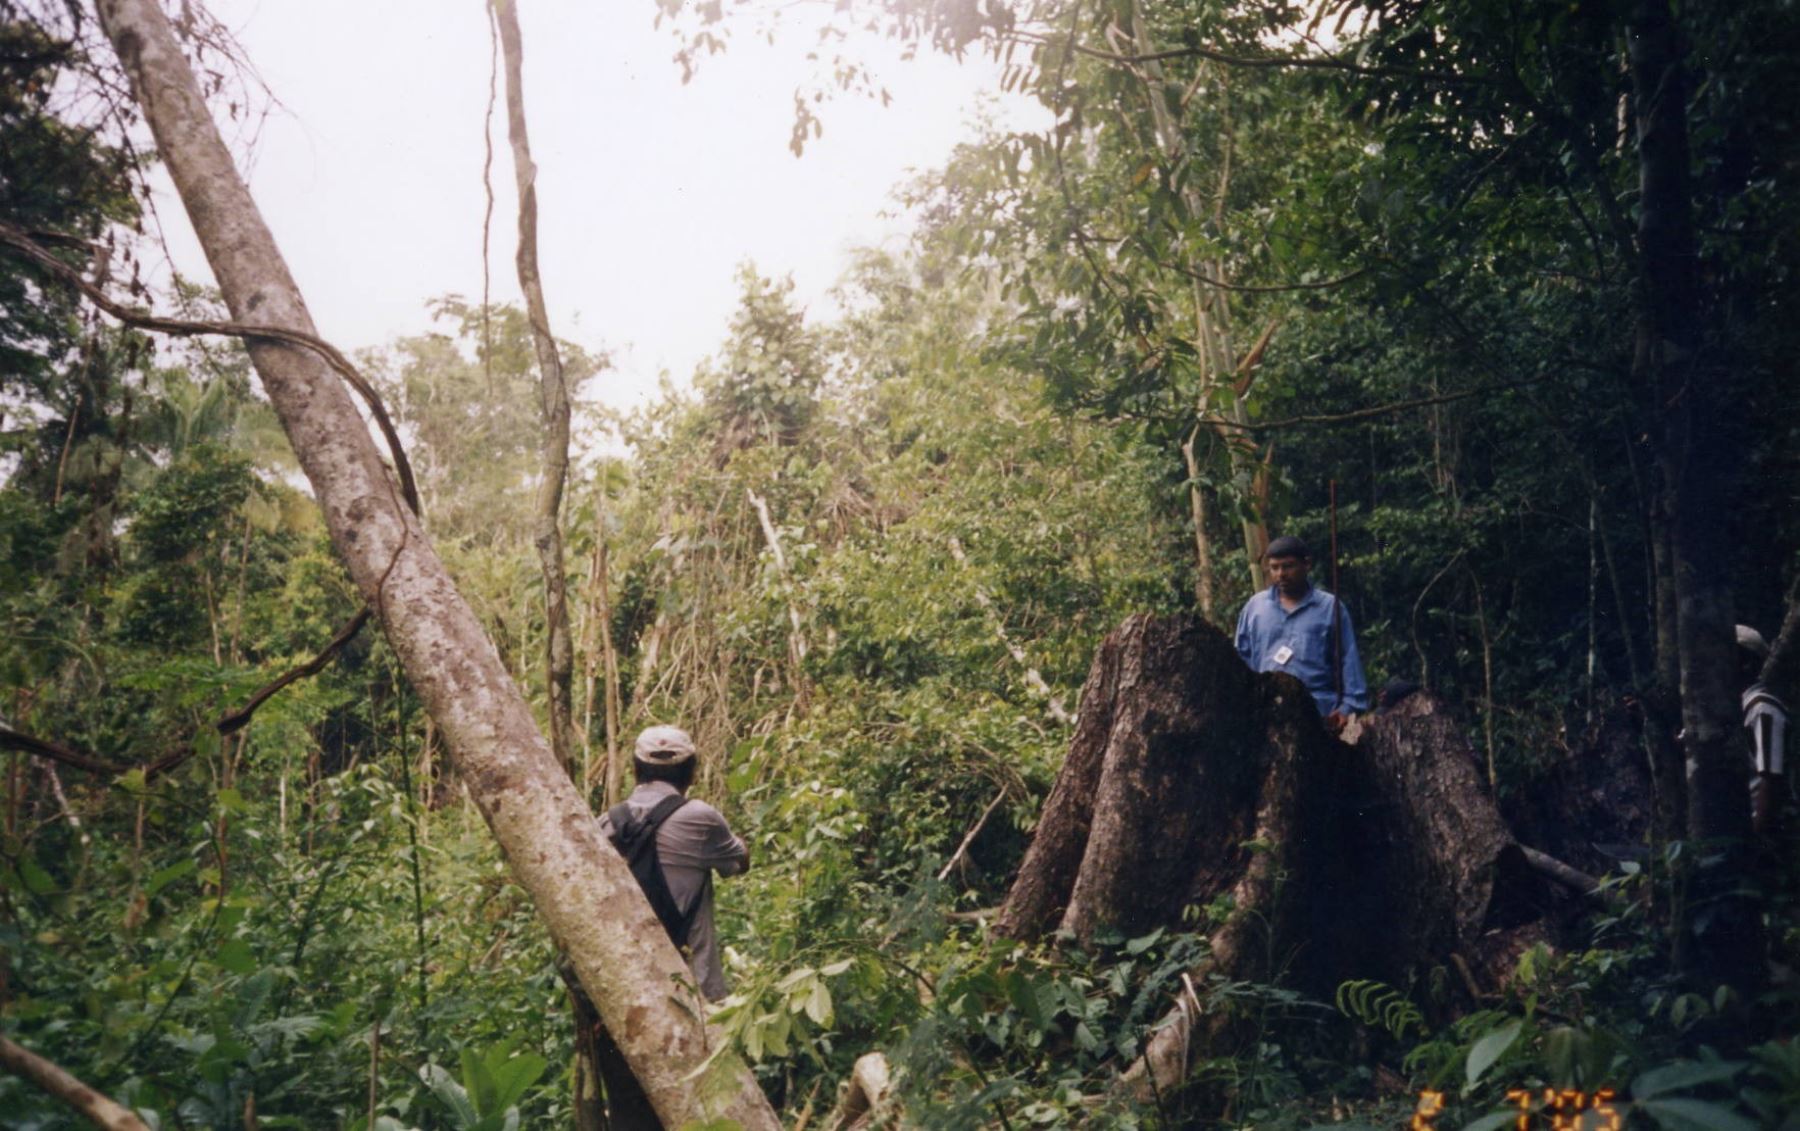 Tala ilegal afecta vida de comunidades indígenas y altera el ecosistema. ANDINA/Archivo